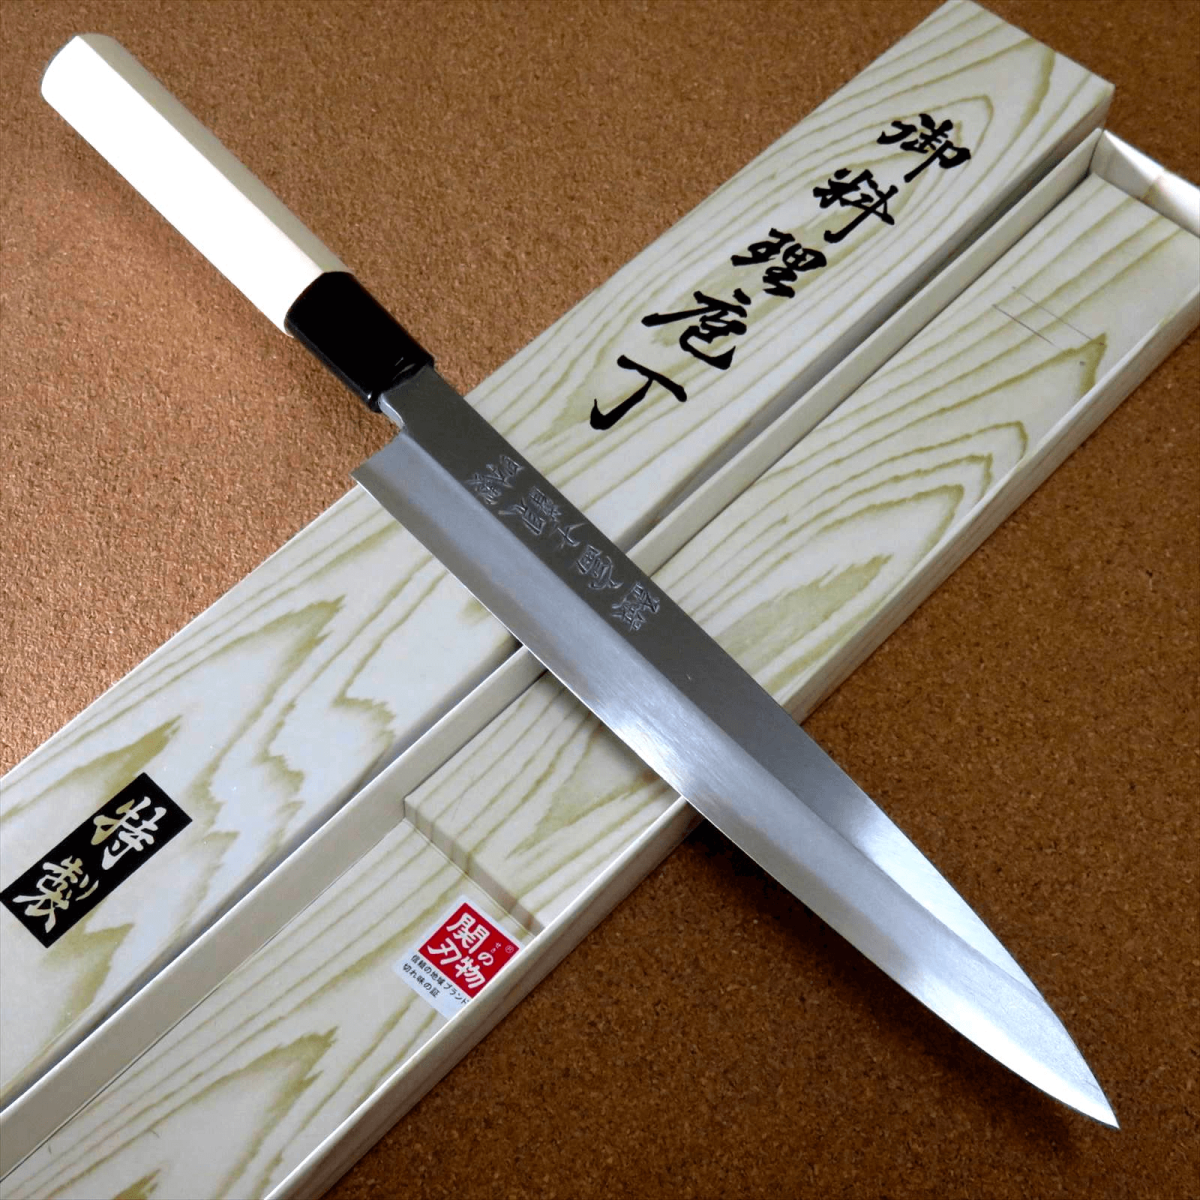 Dao Sashimi là loại dao truyền thống một lưỡi của Nhật Bản được sử dụng trong một chuyển động kéo dài để cắt các lát sushi, sashimi